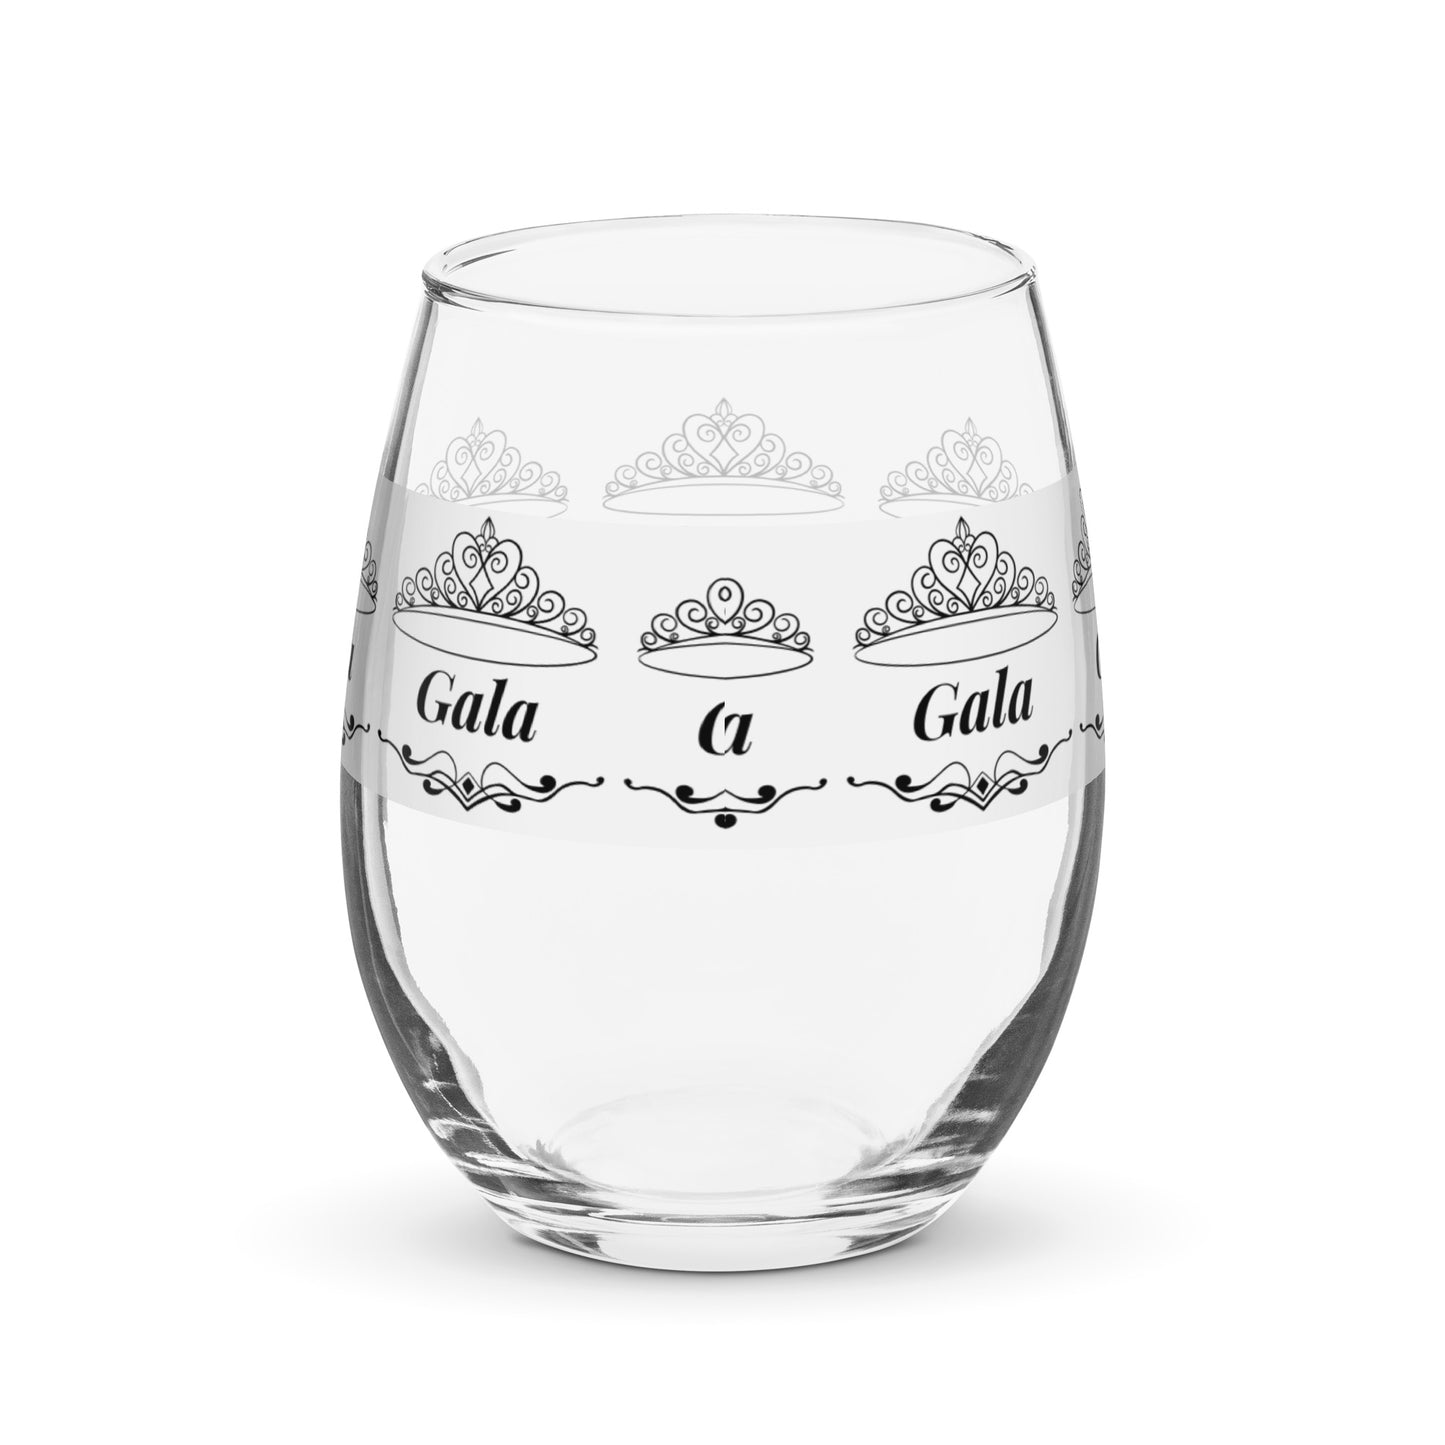 Copa de vino con nombre de Gala copa de vino personalizada copa de vino